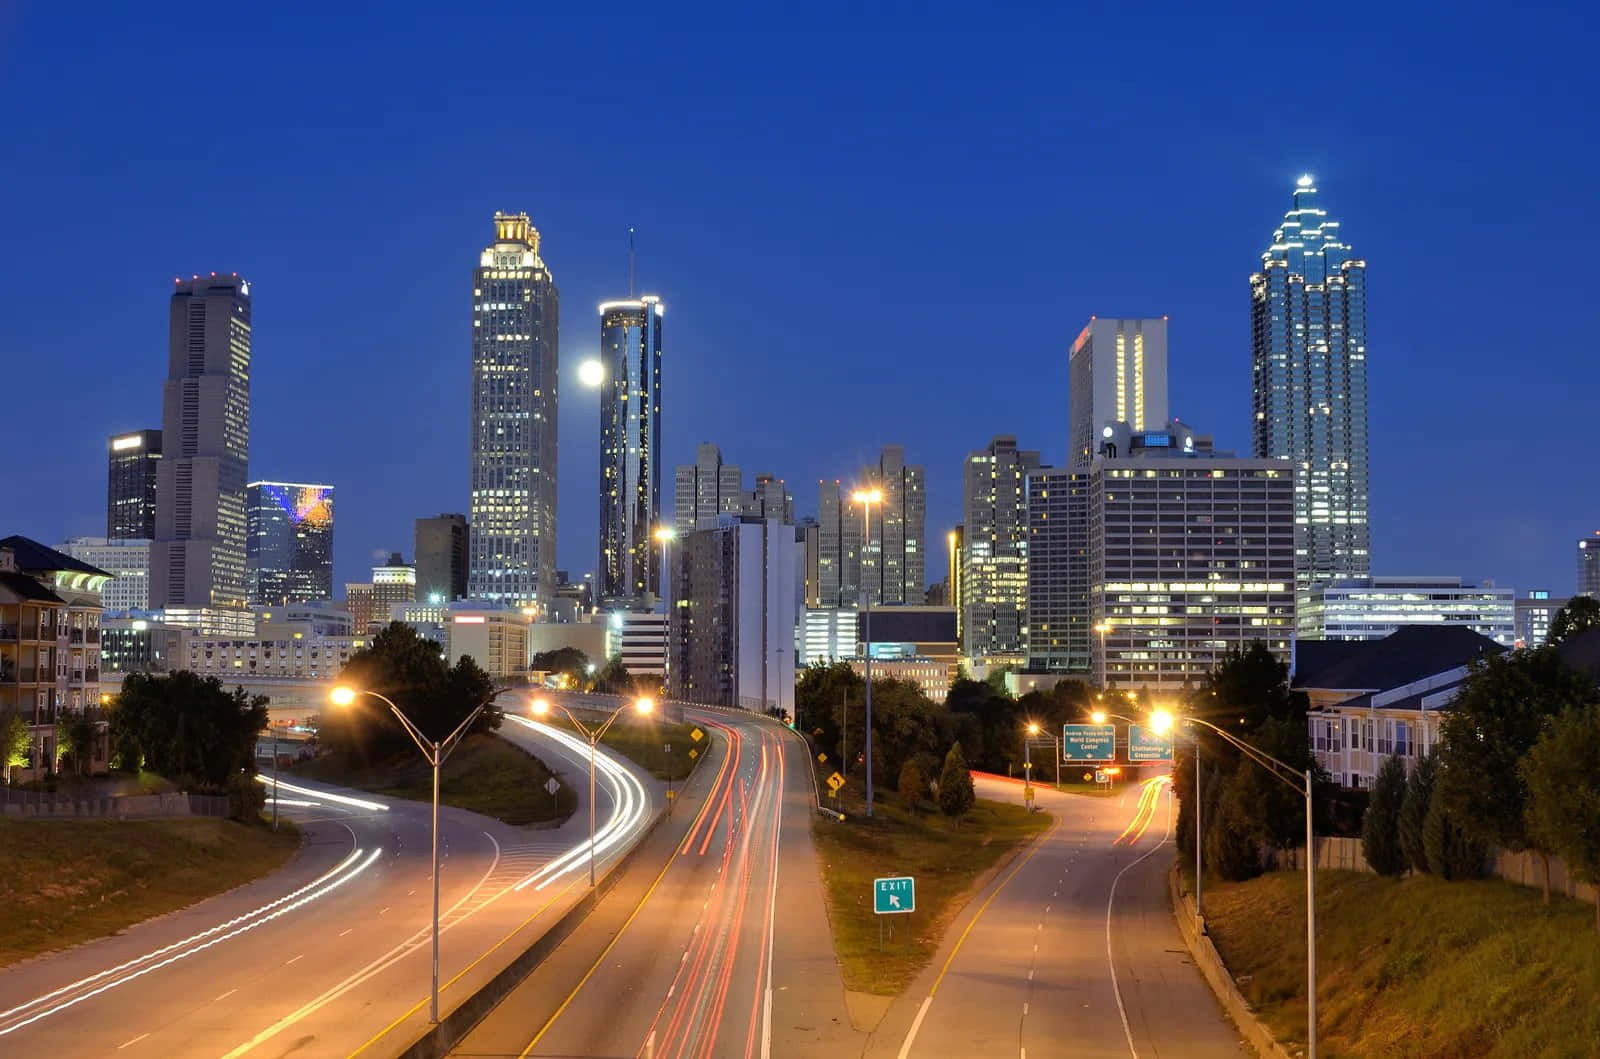 The majestic skyline of Atlanta Georgia